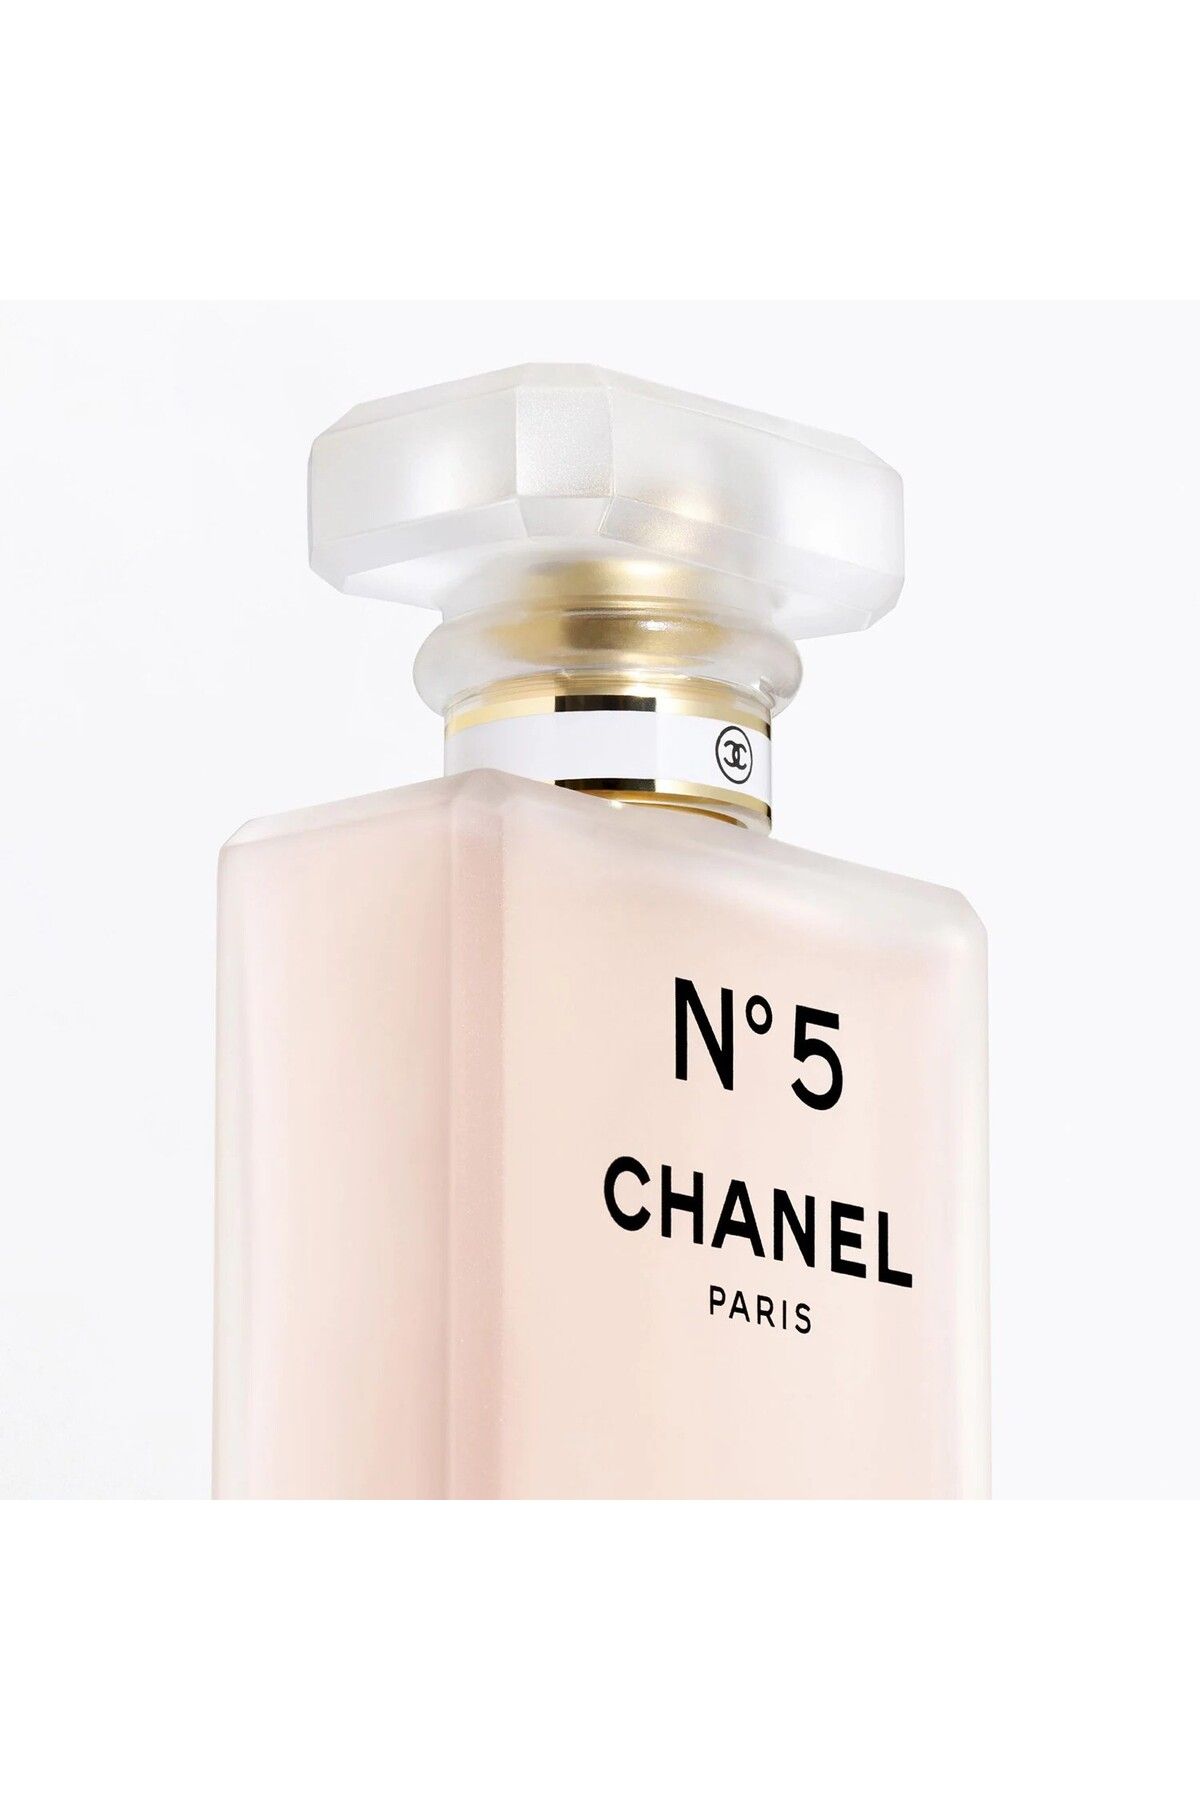 Chanel اسپری عطر مو میست غنی شده با مواد فعال به دست آمده از گل رز و یاس 35 میل